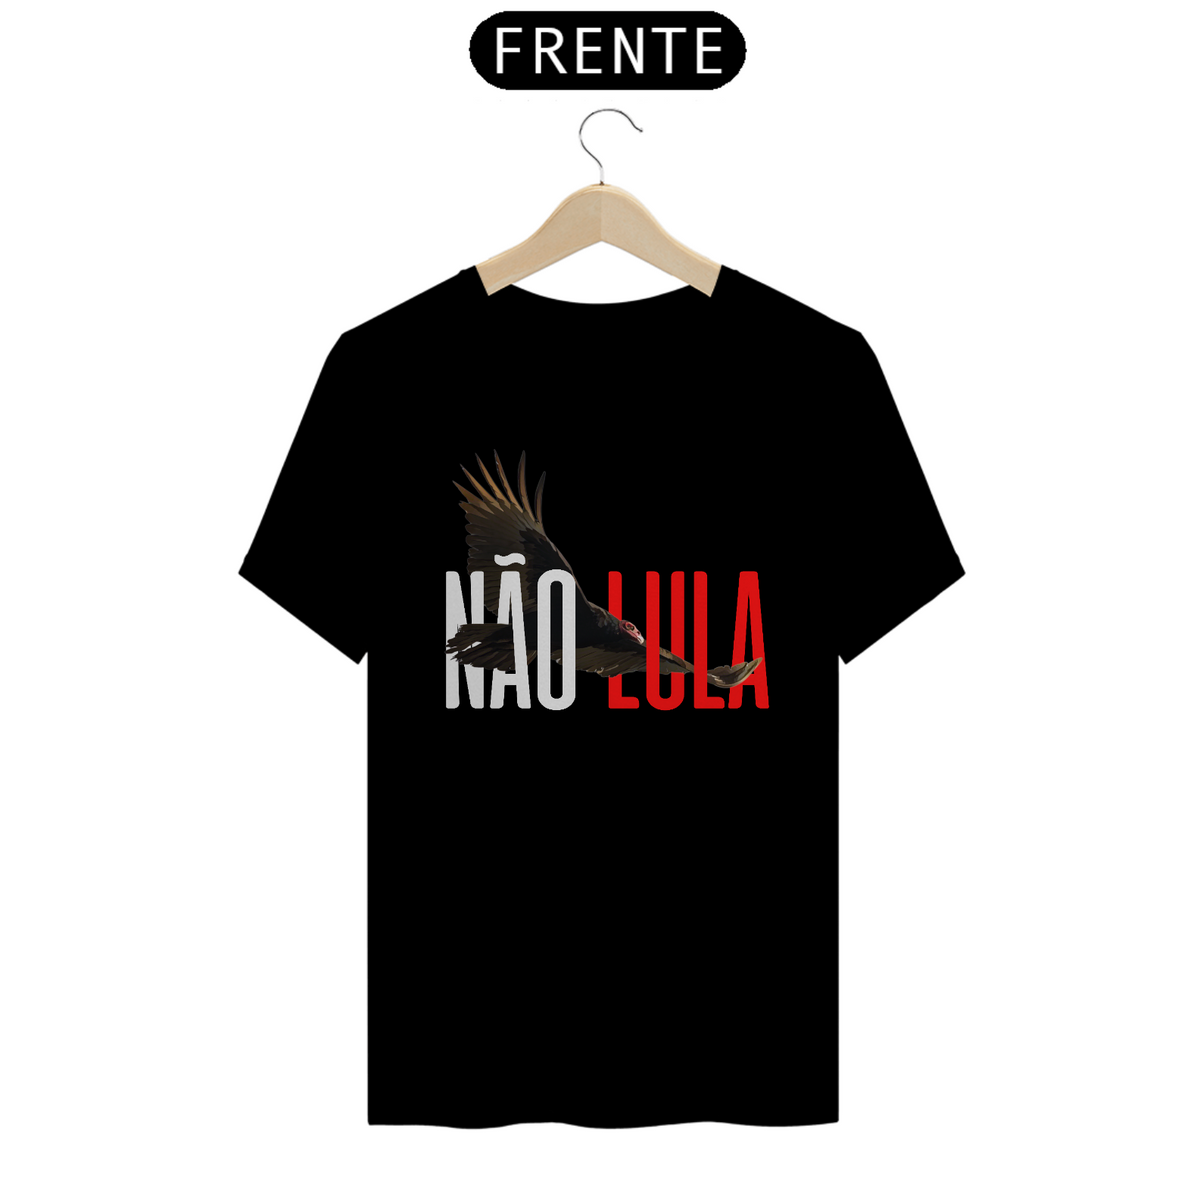 Nome do produto: Camiseta T-Shirt Quality Unissex / Não Lula